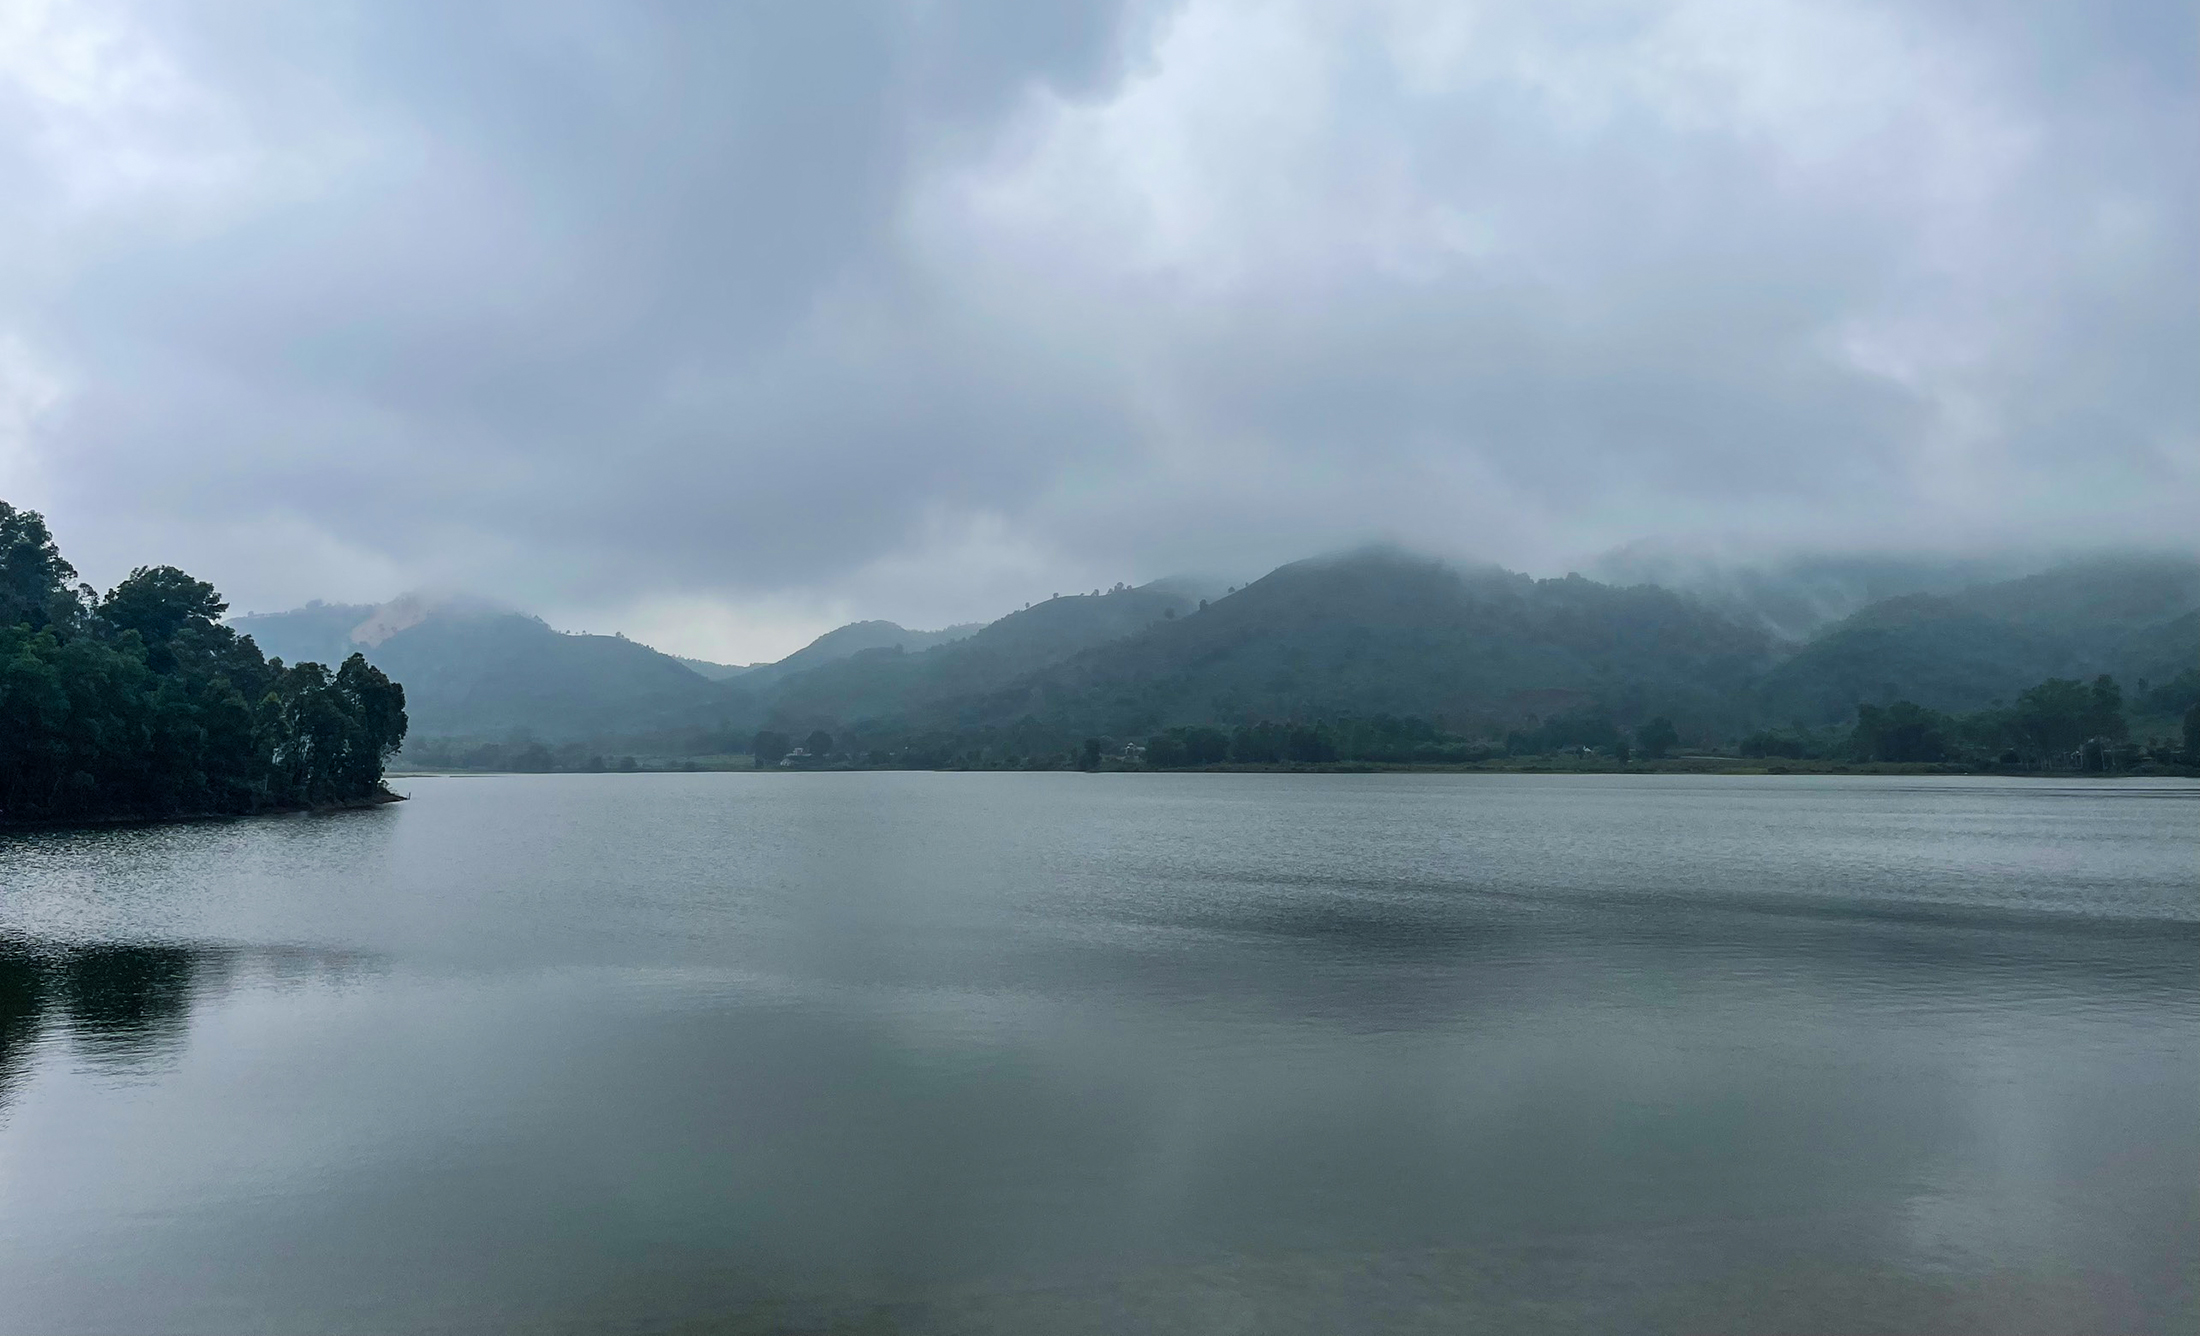 Hồ Hào Thành dưới chân núi Thiên Nhẫn. Ảnh: Tiến Đông